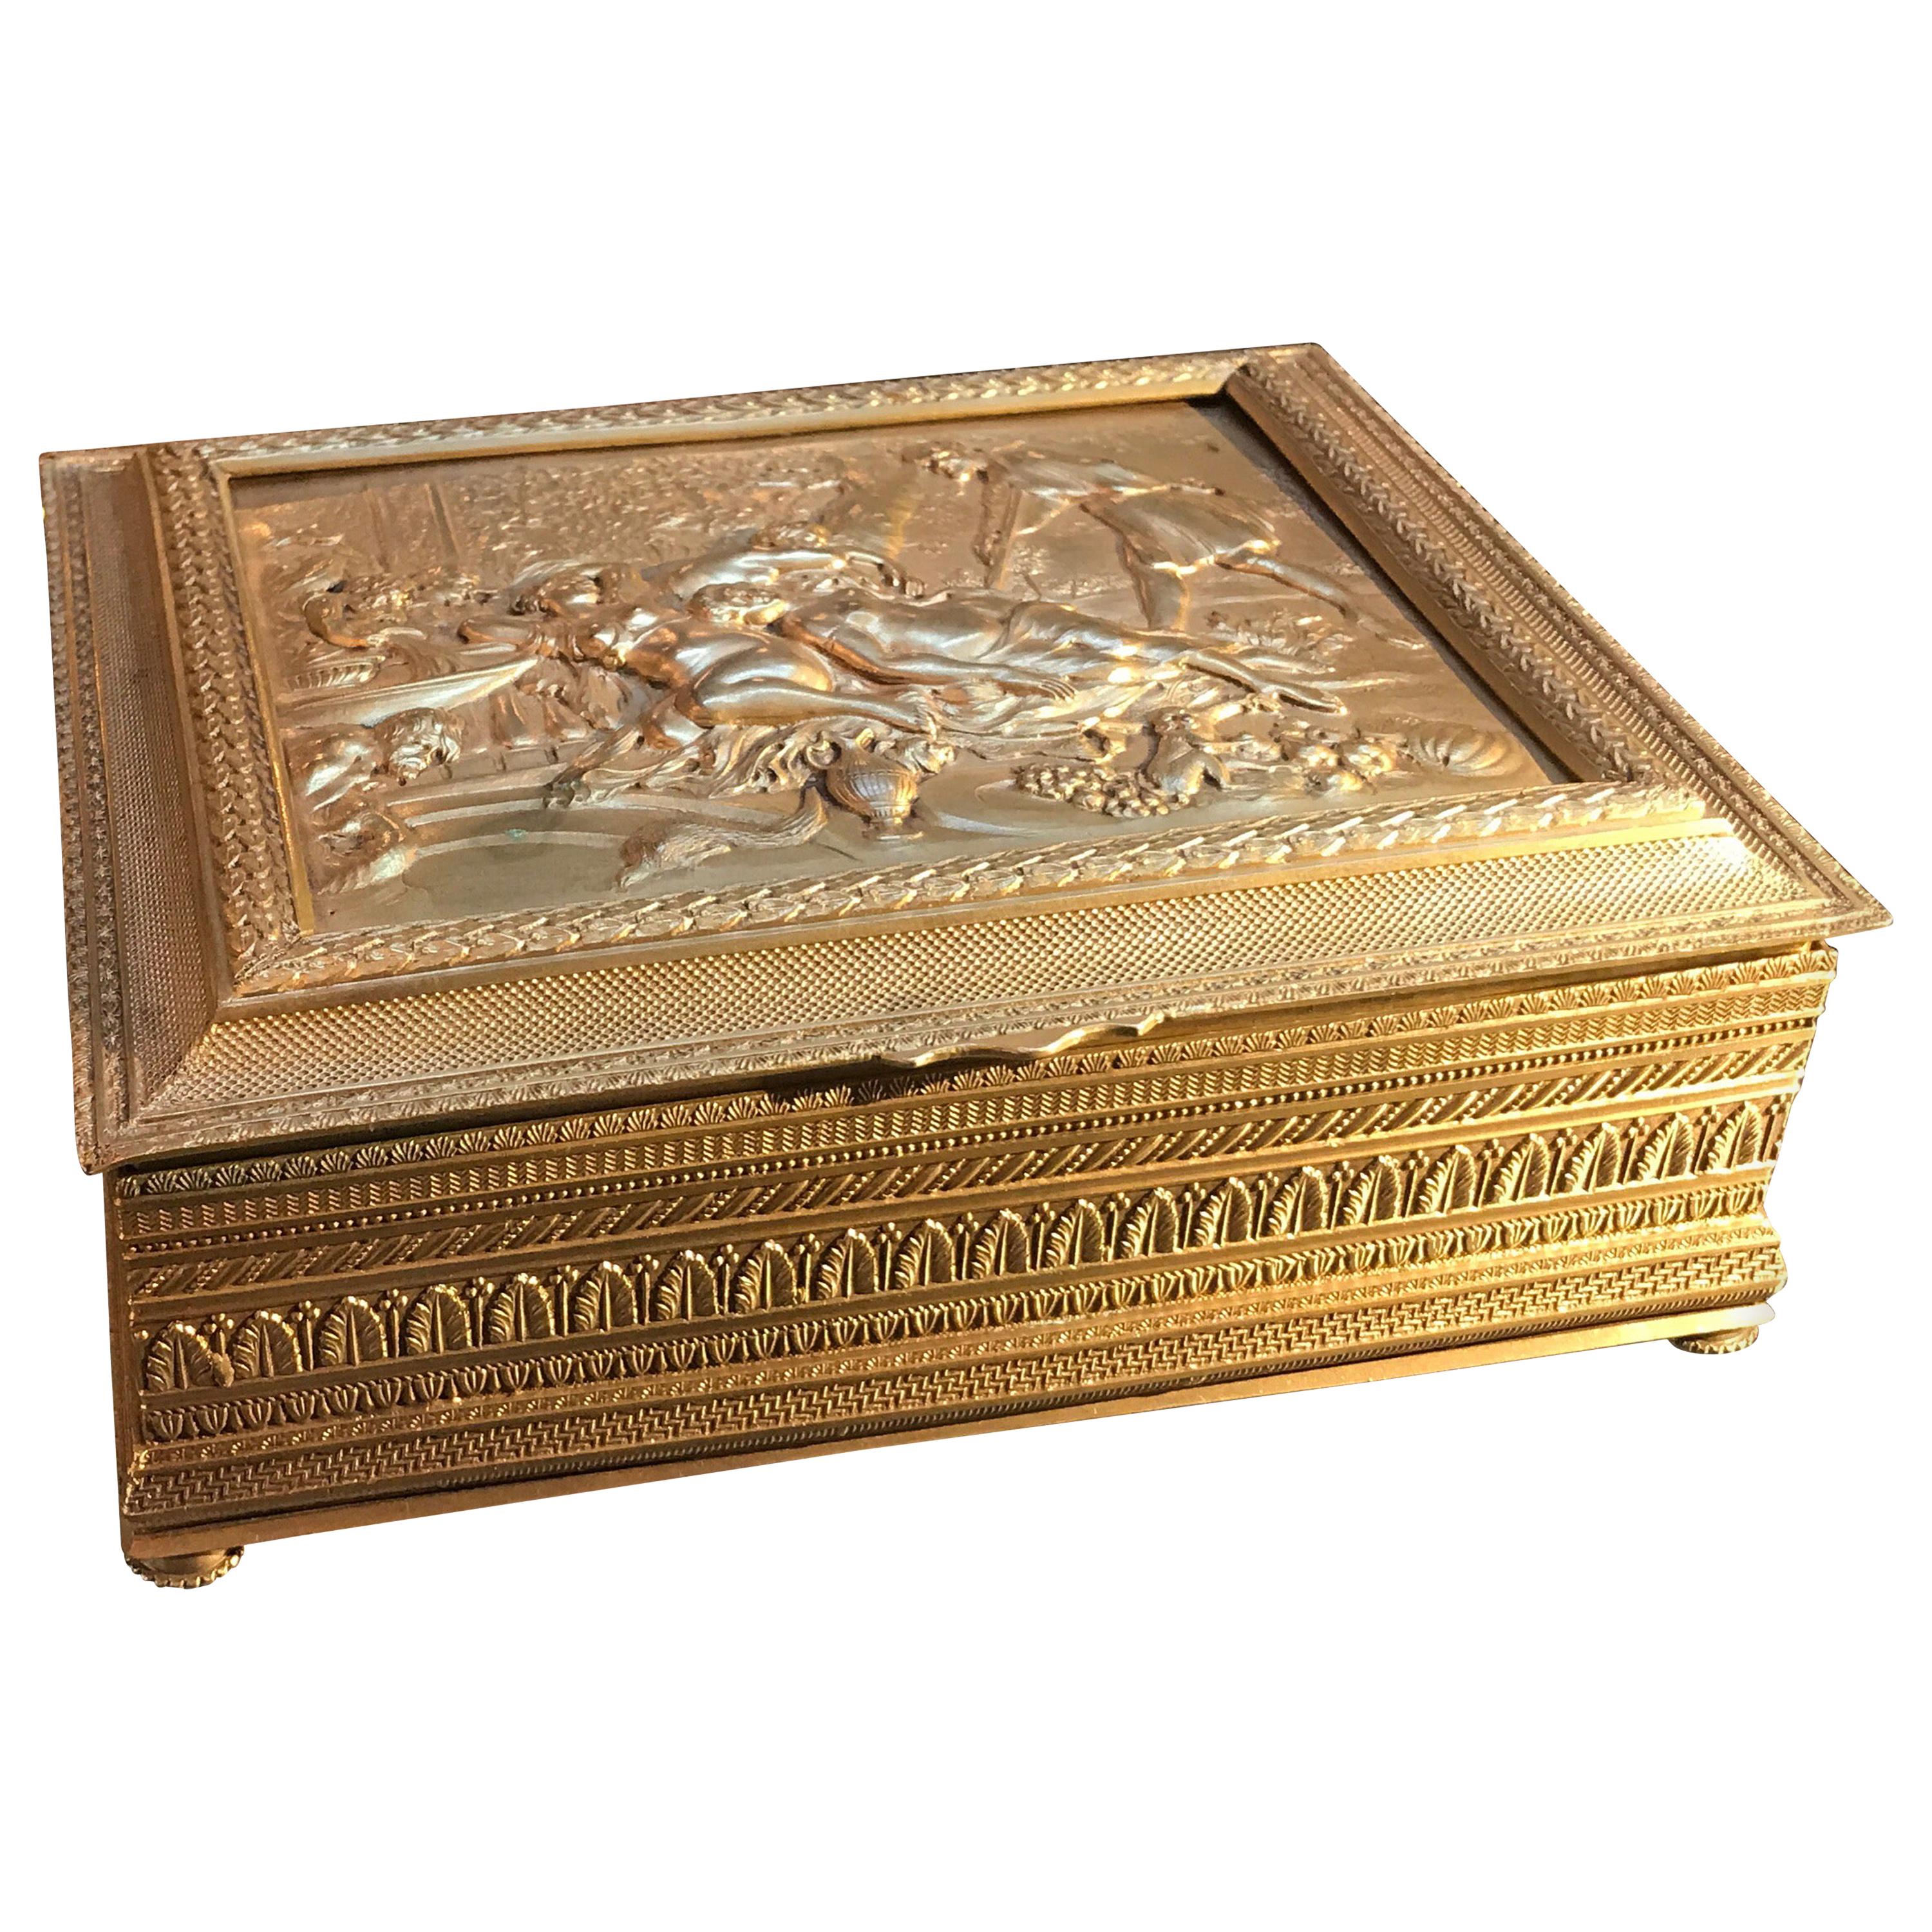 Antique boîte de table autrichienne en bronze doré vers 1900